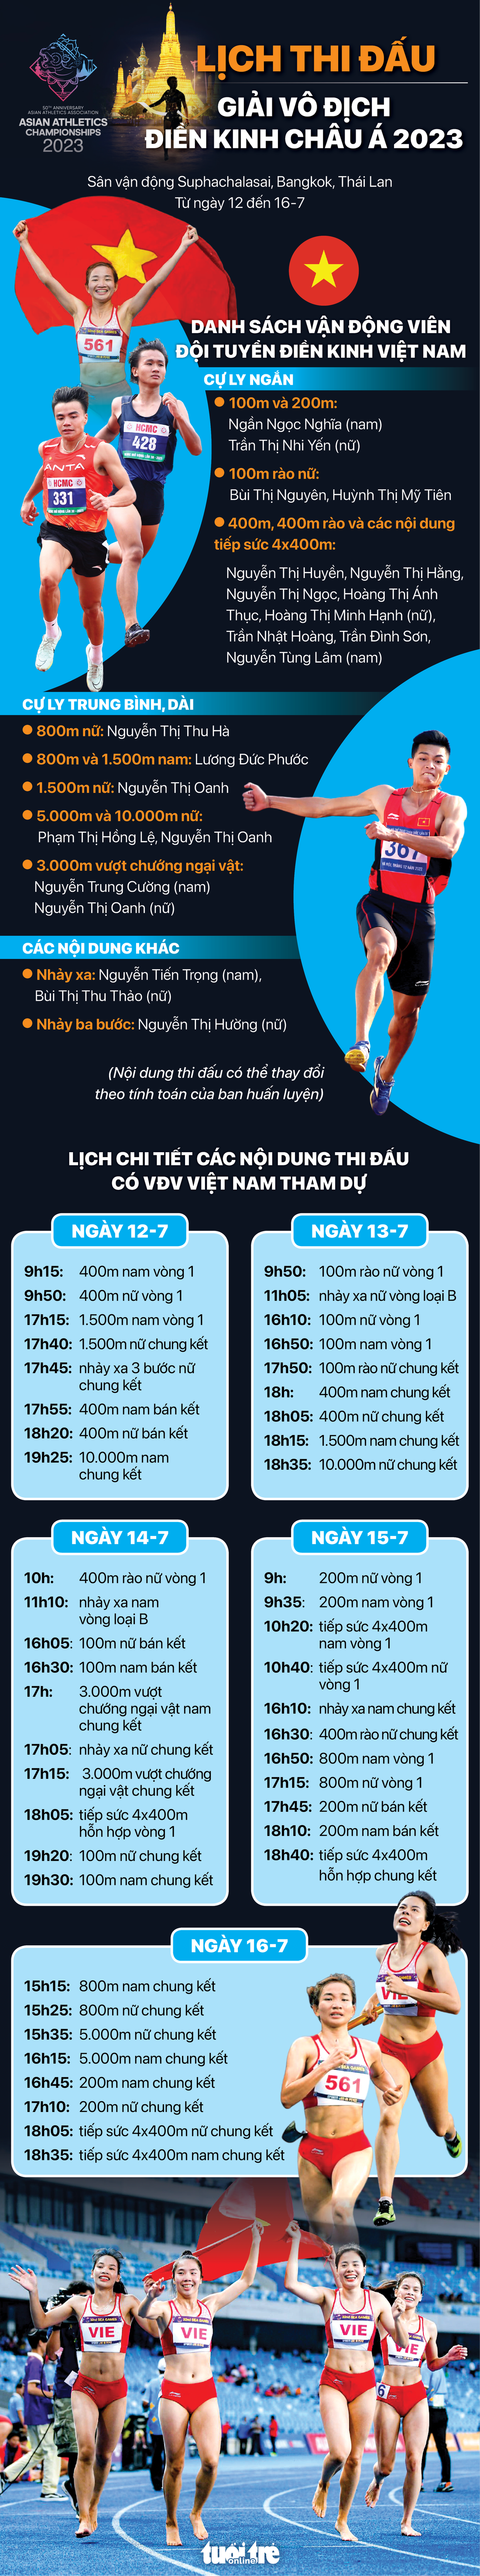 Lịch thi đấu đội tuyển điền kinh Việt Nam ở Giải vô địch điền kinh châu Á 2023 - Đồ họa: AN BÌNH